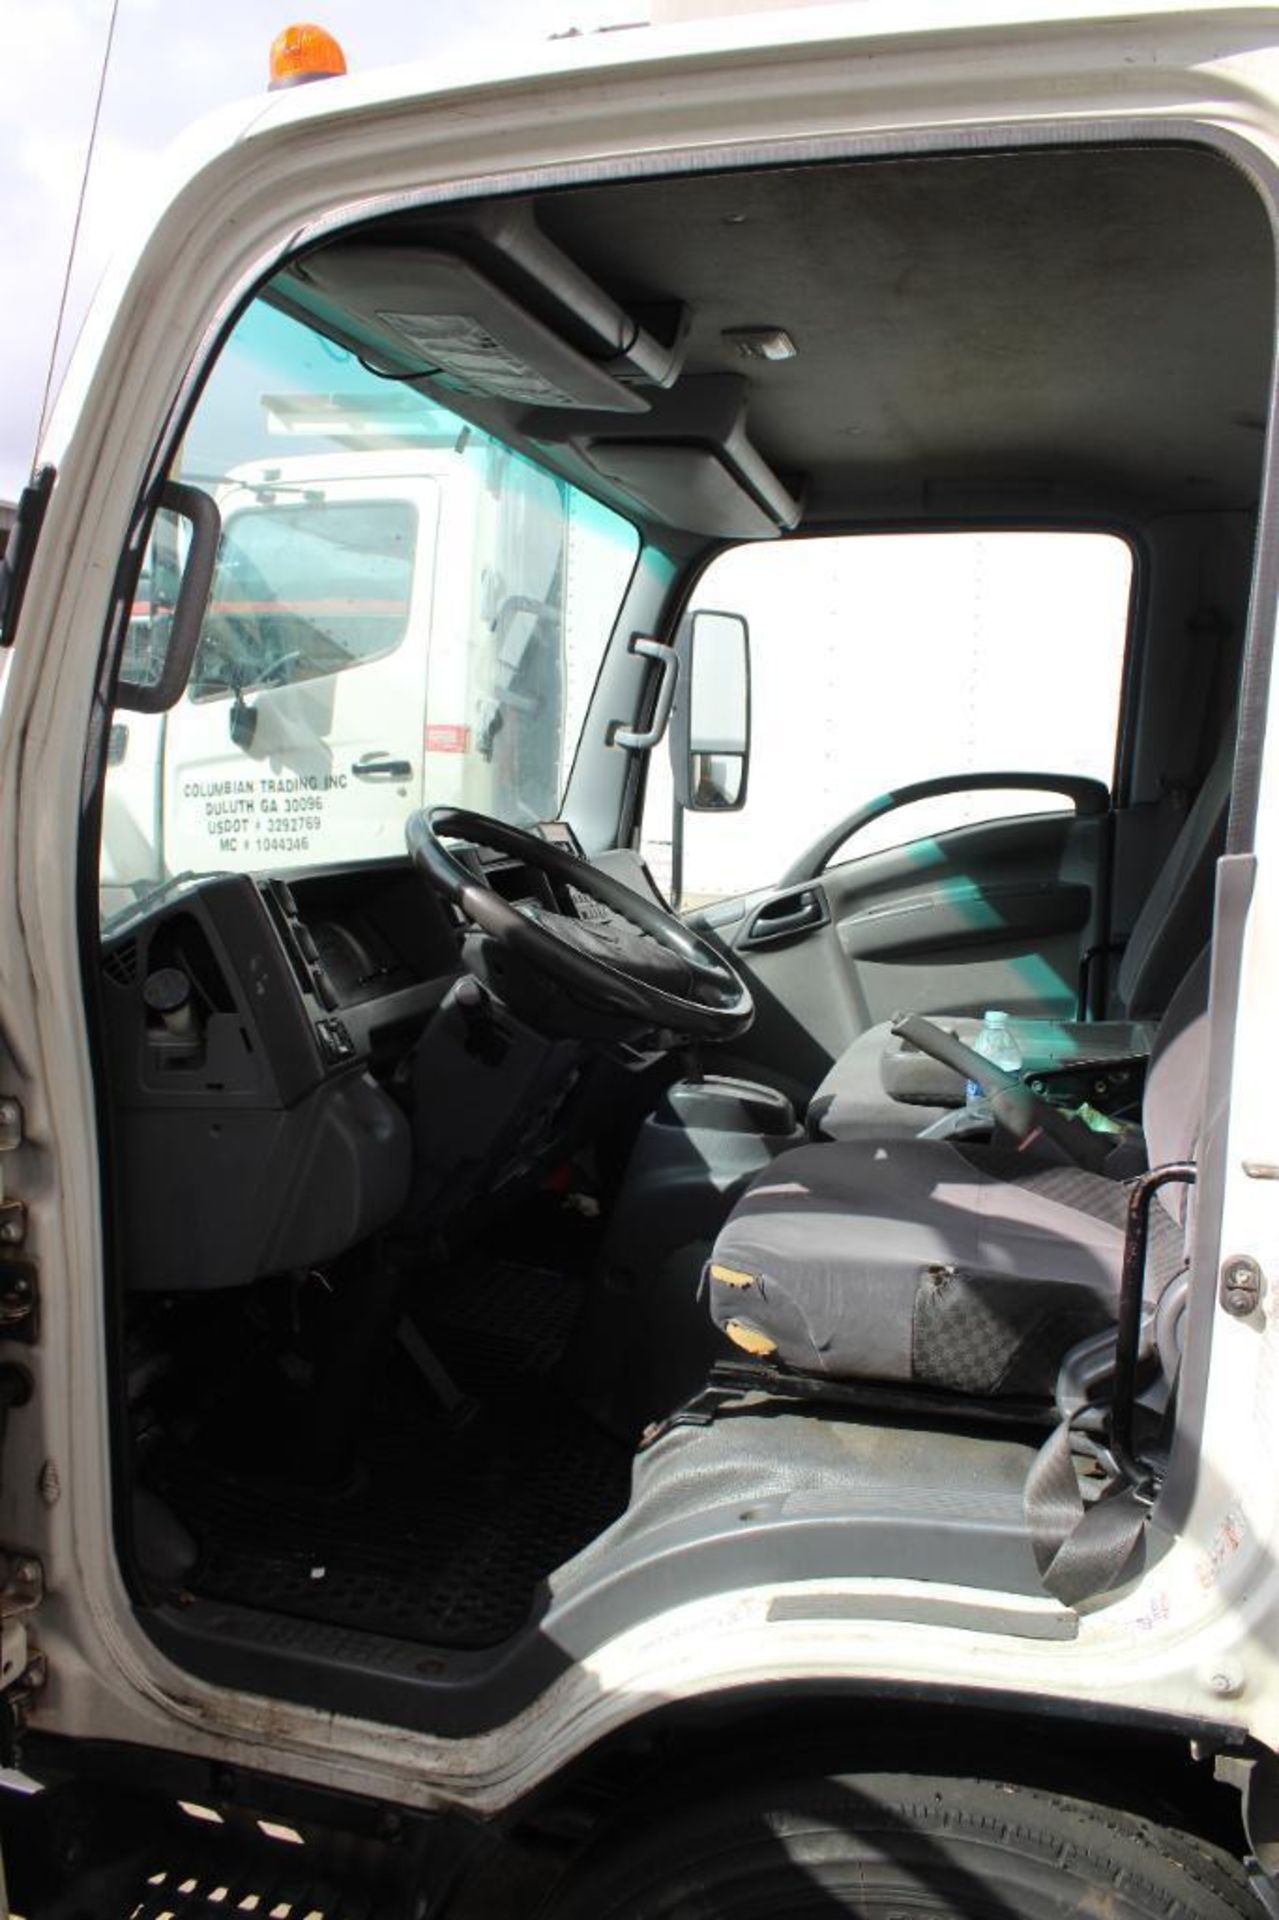 2015 Isuzu NQR Diesel Truck - Image 21 of 44